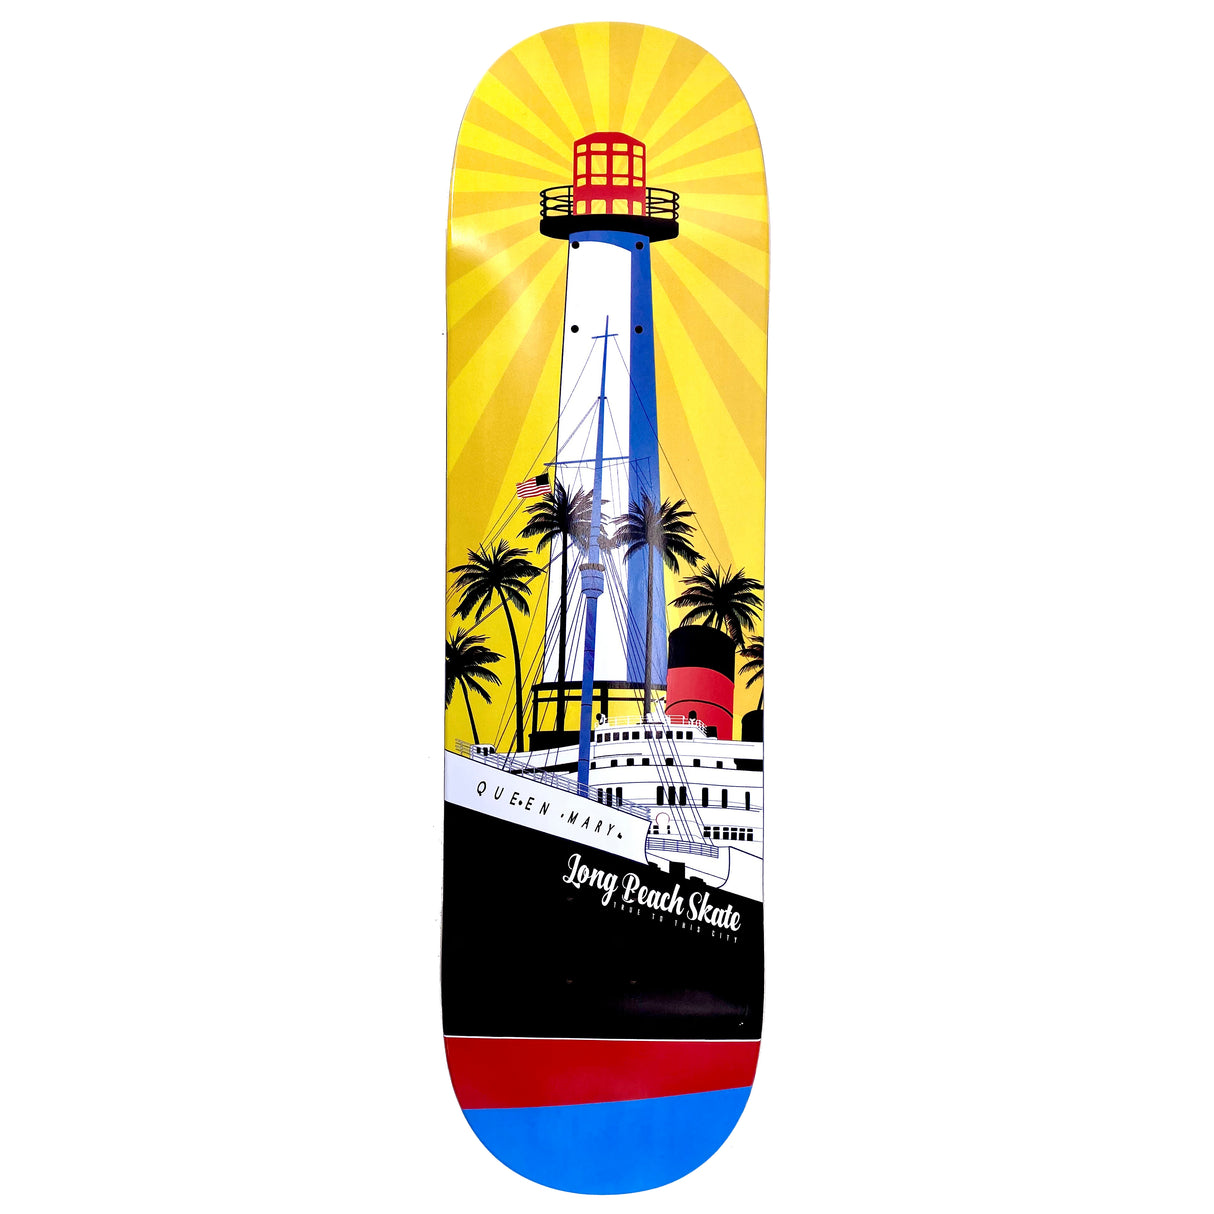 Long Beach Skate Co. "Rising Sun on Light Mary" Gold Red Blue 8.25" Skateboard Deck